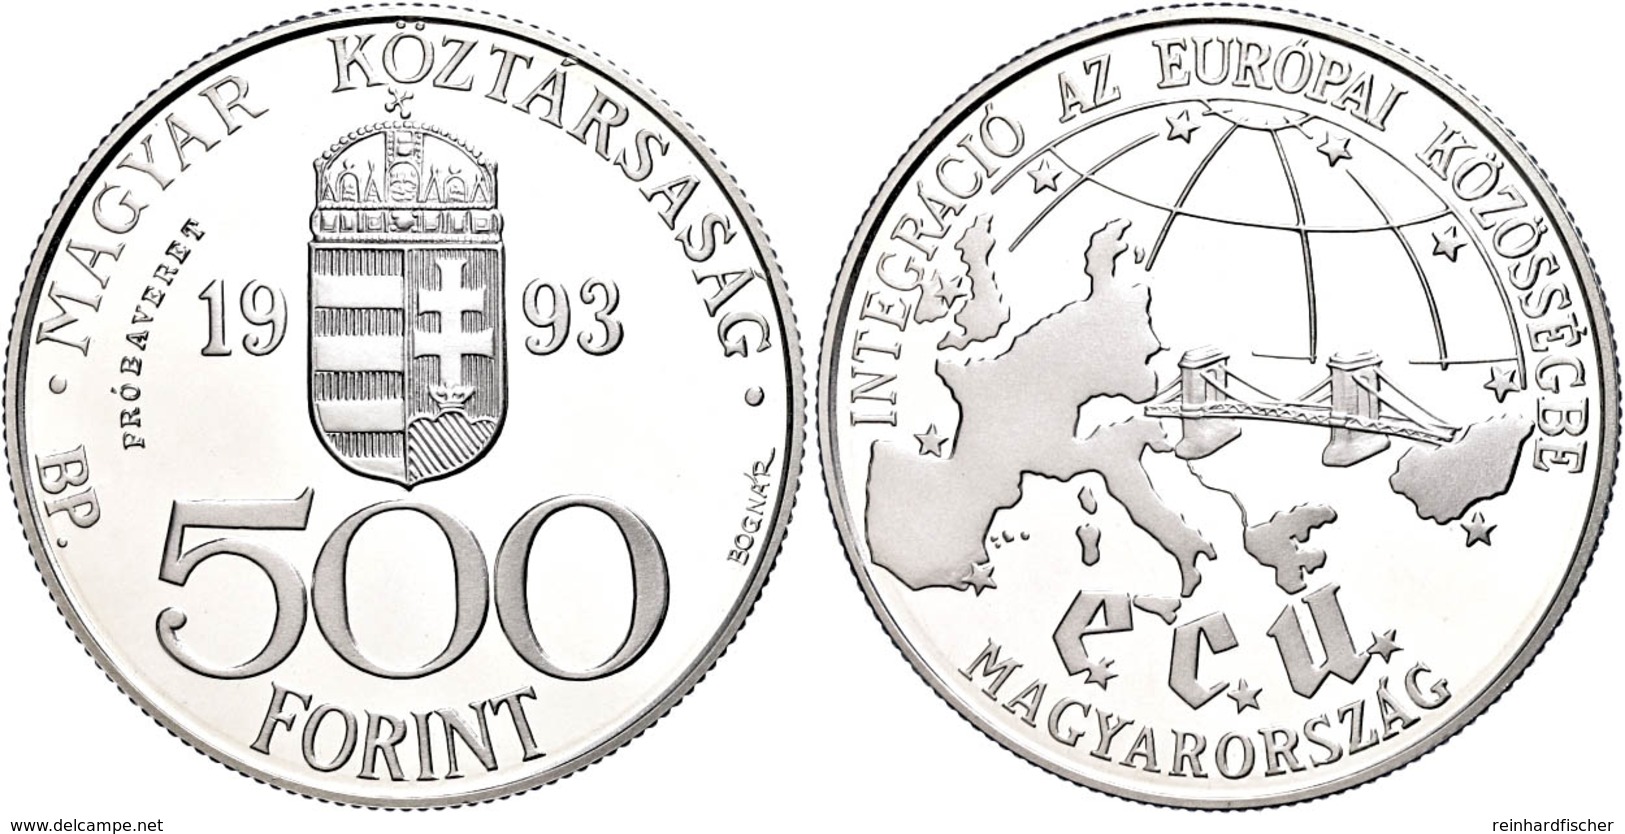 500 Forint, Silber, 1993, Probe, EU, Vgl. KM 704, In Kapsel, PP.  PP - Ungarn